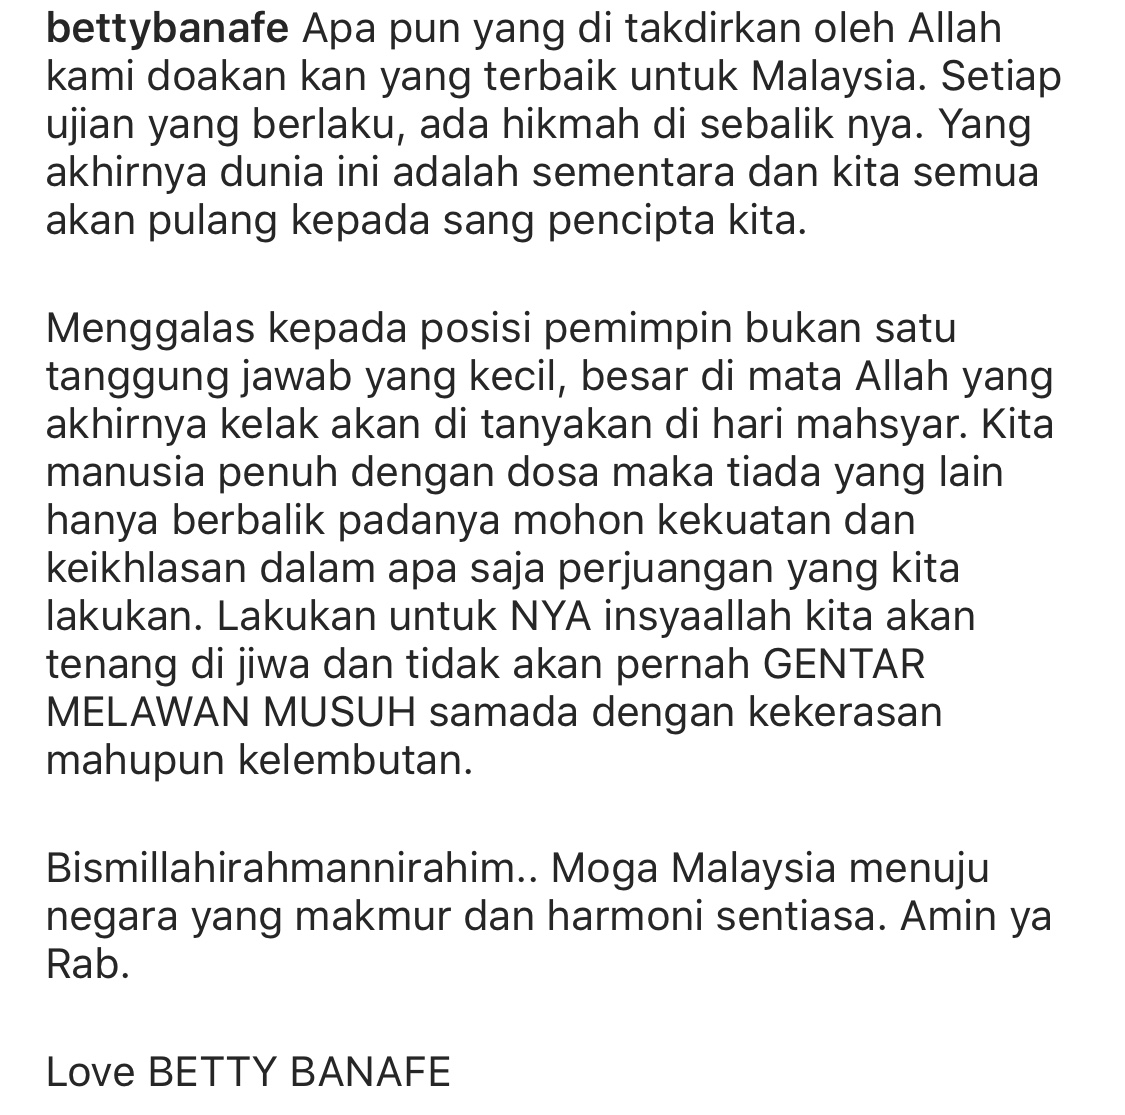 Doa Betty Banafe Di Tanah Suci Buat Malaysia, &#8211; &#8220;Posisi Pemimpin Bukan Tanggungjawab Kecil, Kelak Akan Ditanyakan Di Hari Masyar.”